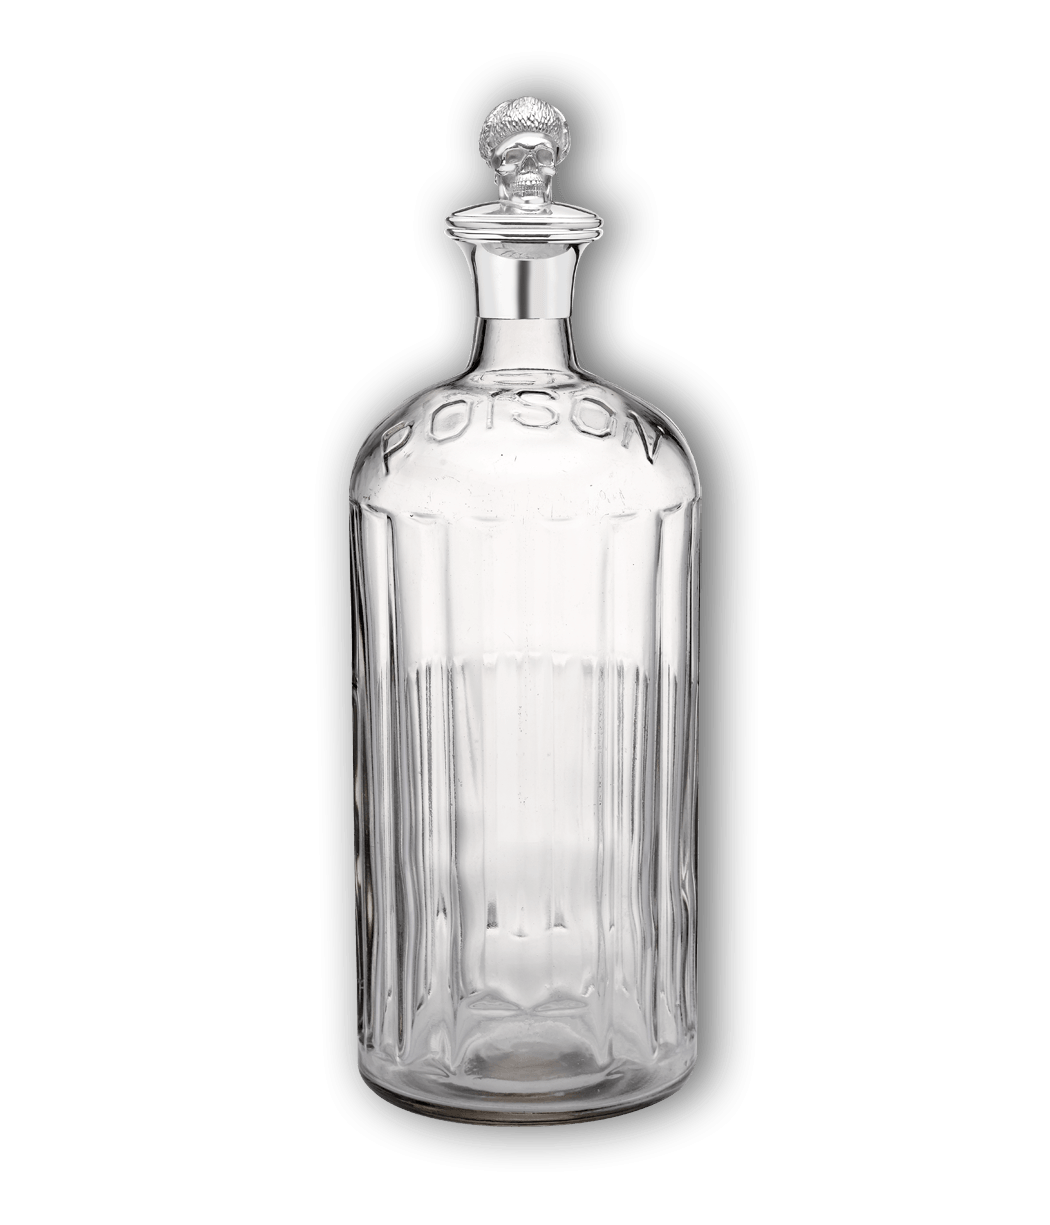 Empty Bottle Transparent Image